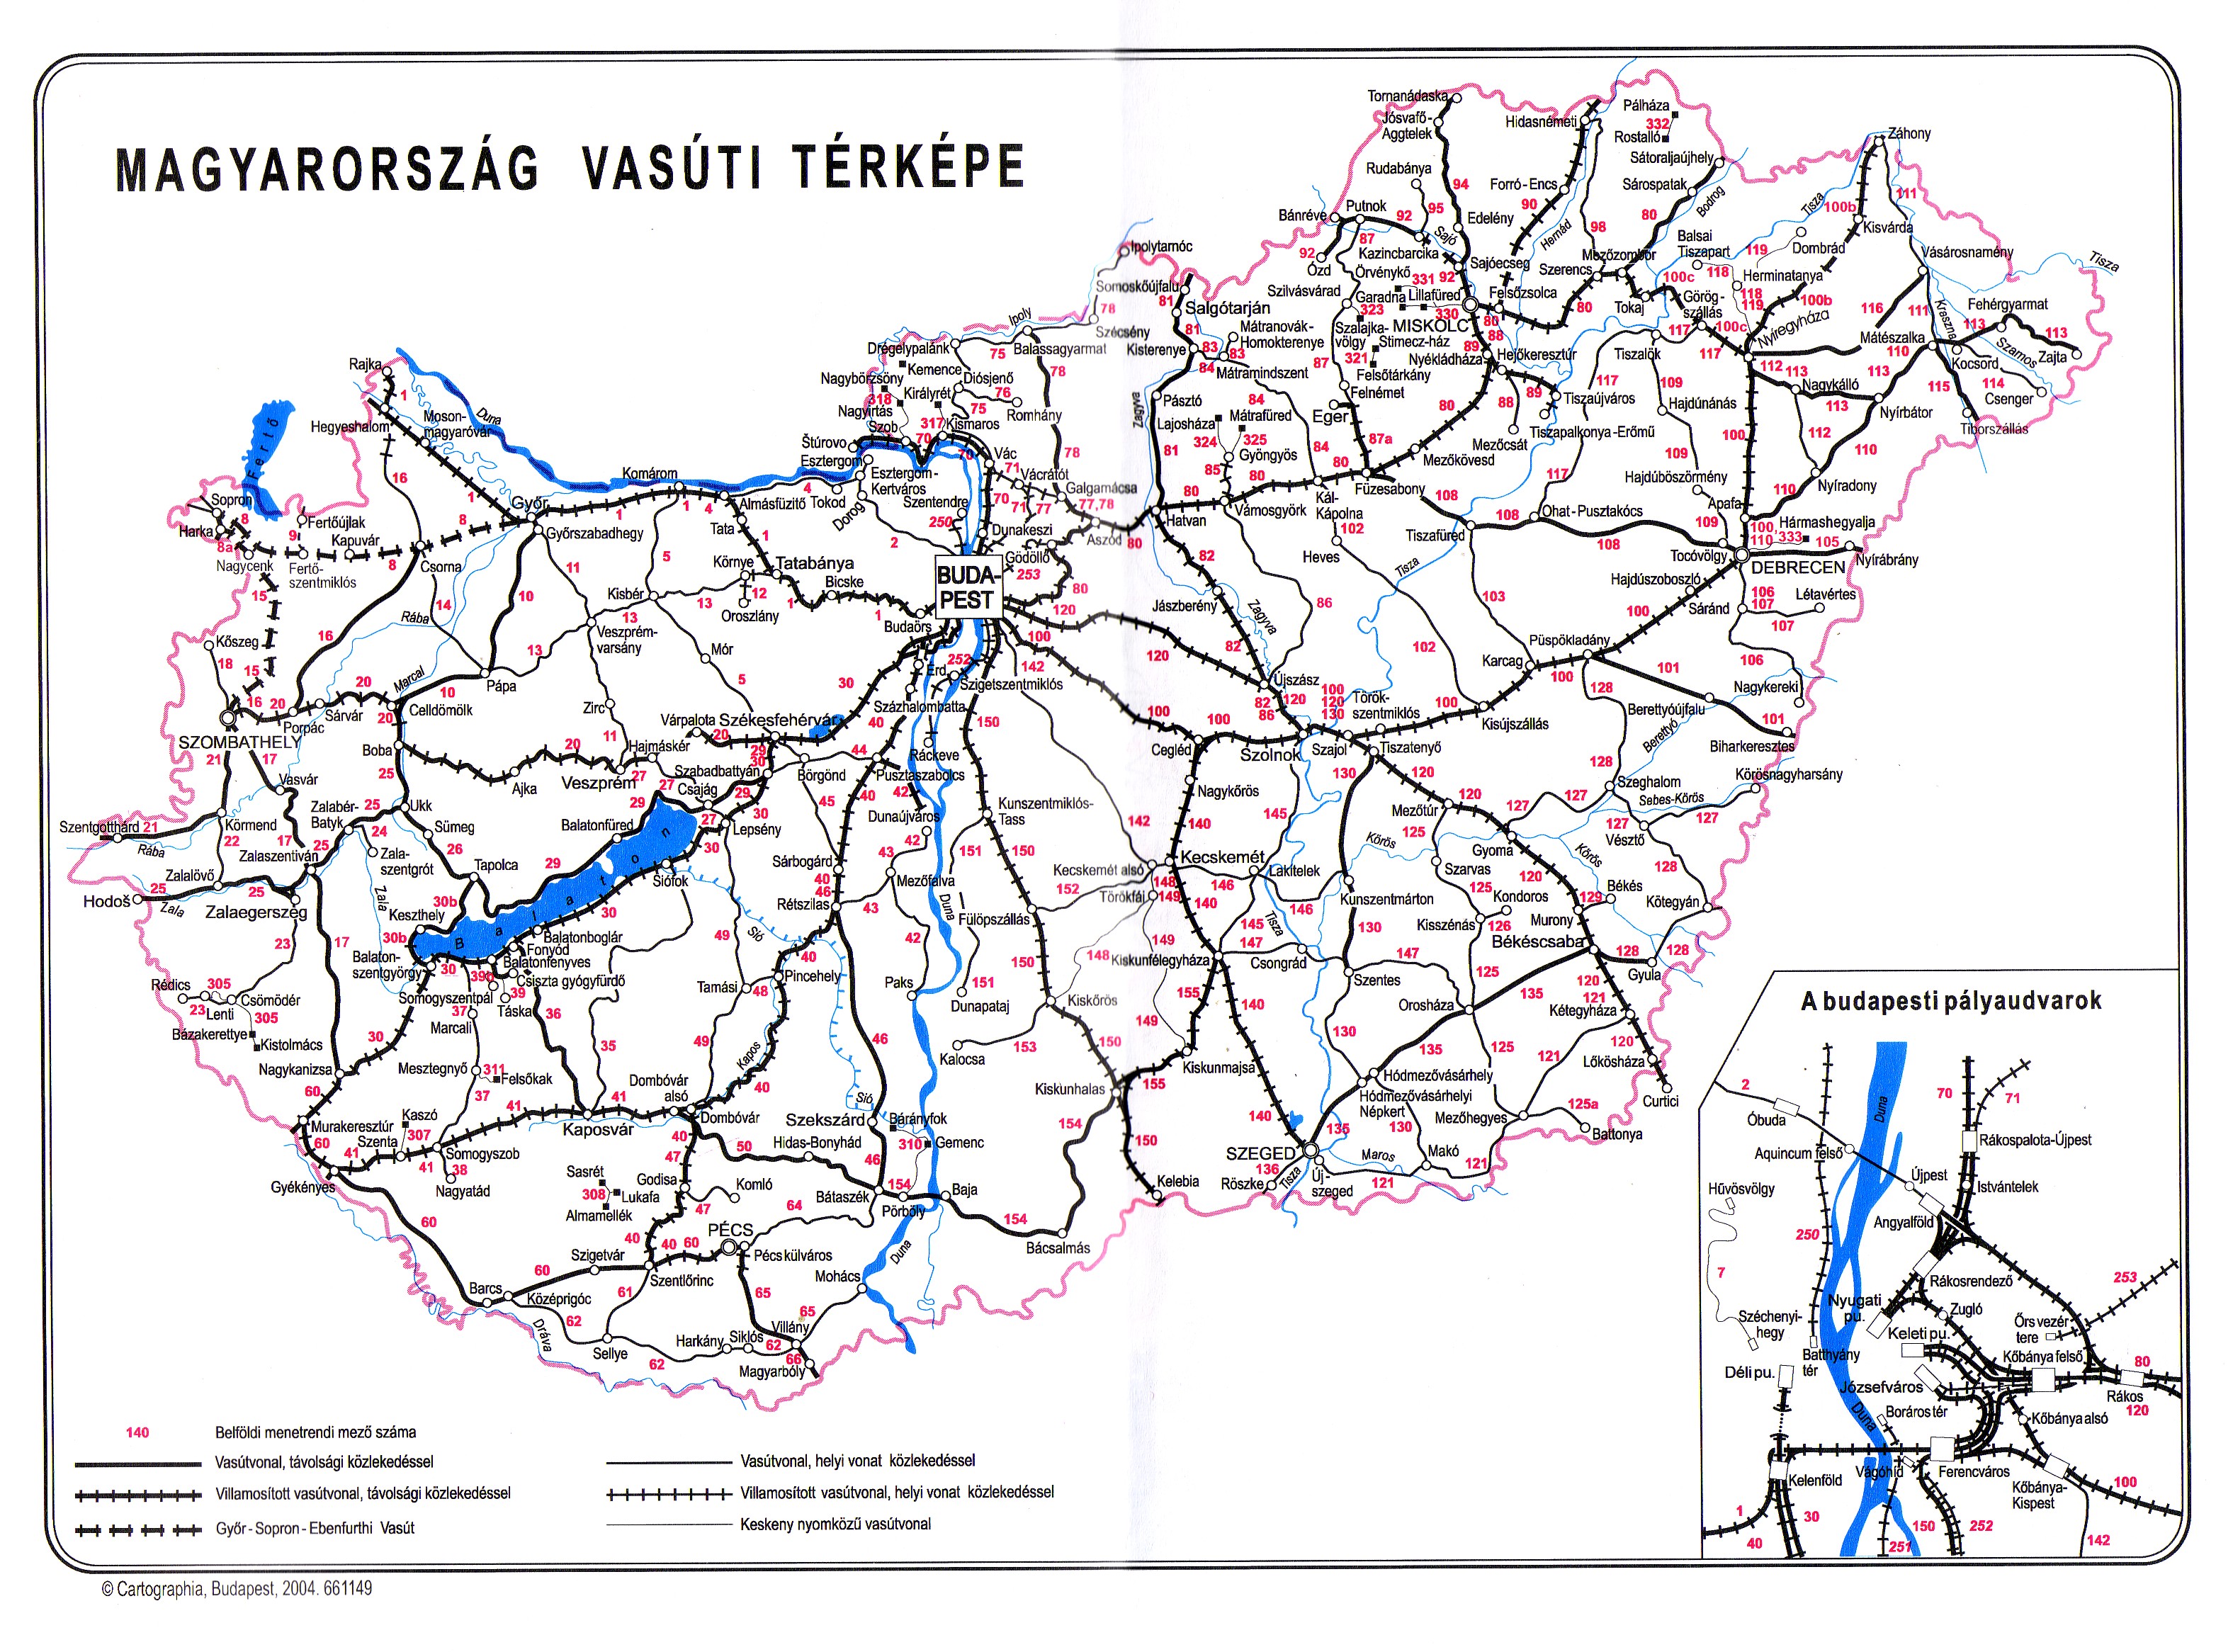 balaton vasúti térkép részletes Vasúti térképek   Magyarország vasútállomásai és vasúti megállóhelyei balaton vasúti térkép részletes